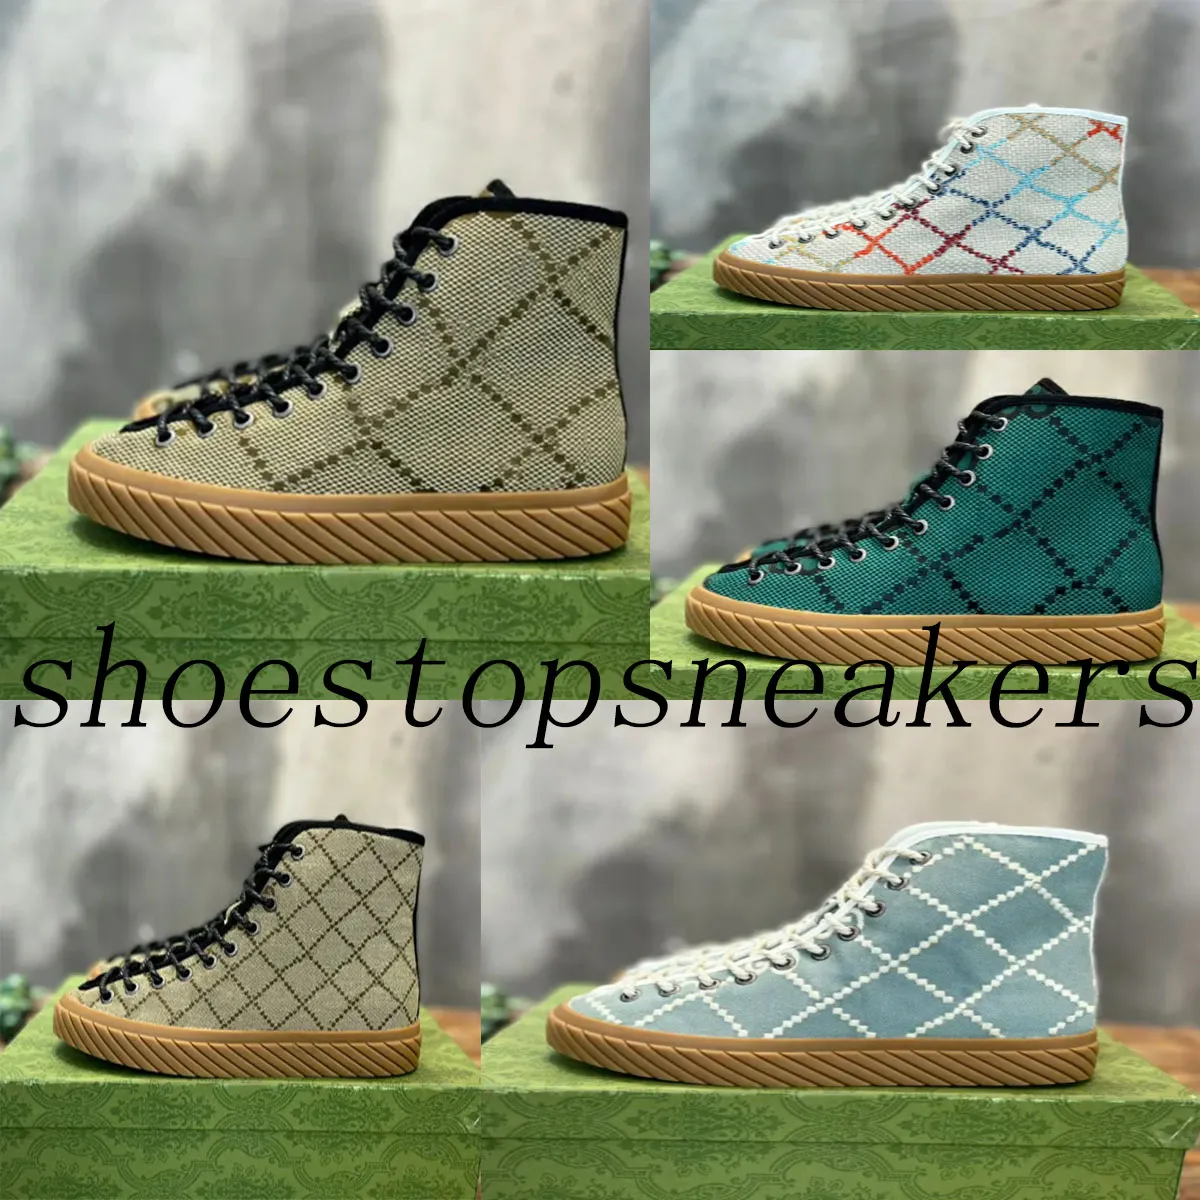 Tenis 1977s Yeni Maxi Spor Sneaker Tasarımcı Kadın Ayakkabı Şerit Trim Deve ve Ebony Canvas Ayakkabıları Kadınlar İçin Kauçuk Sole Yeni Sneakers Yüksek Üst